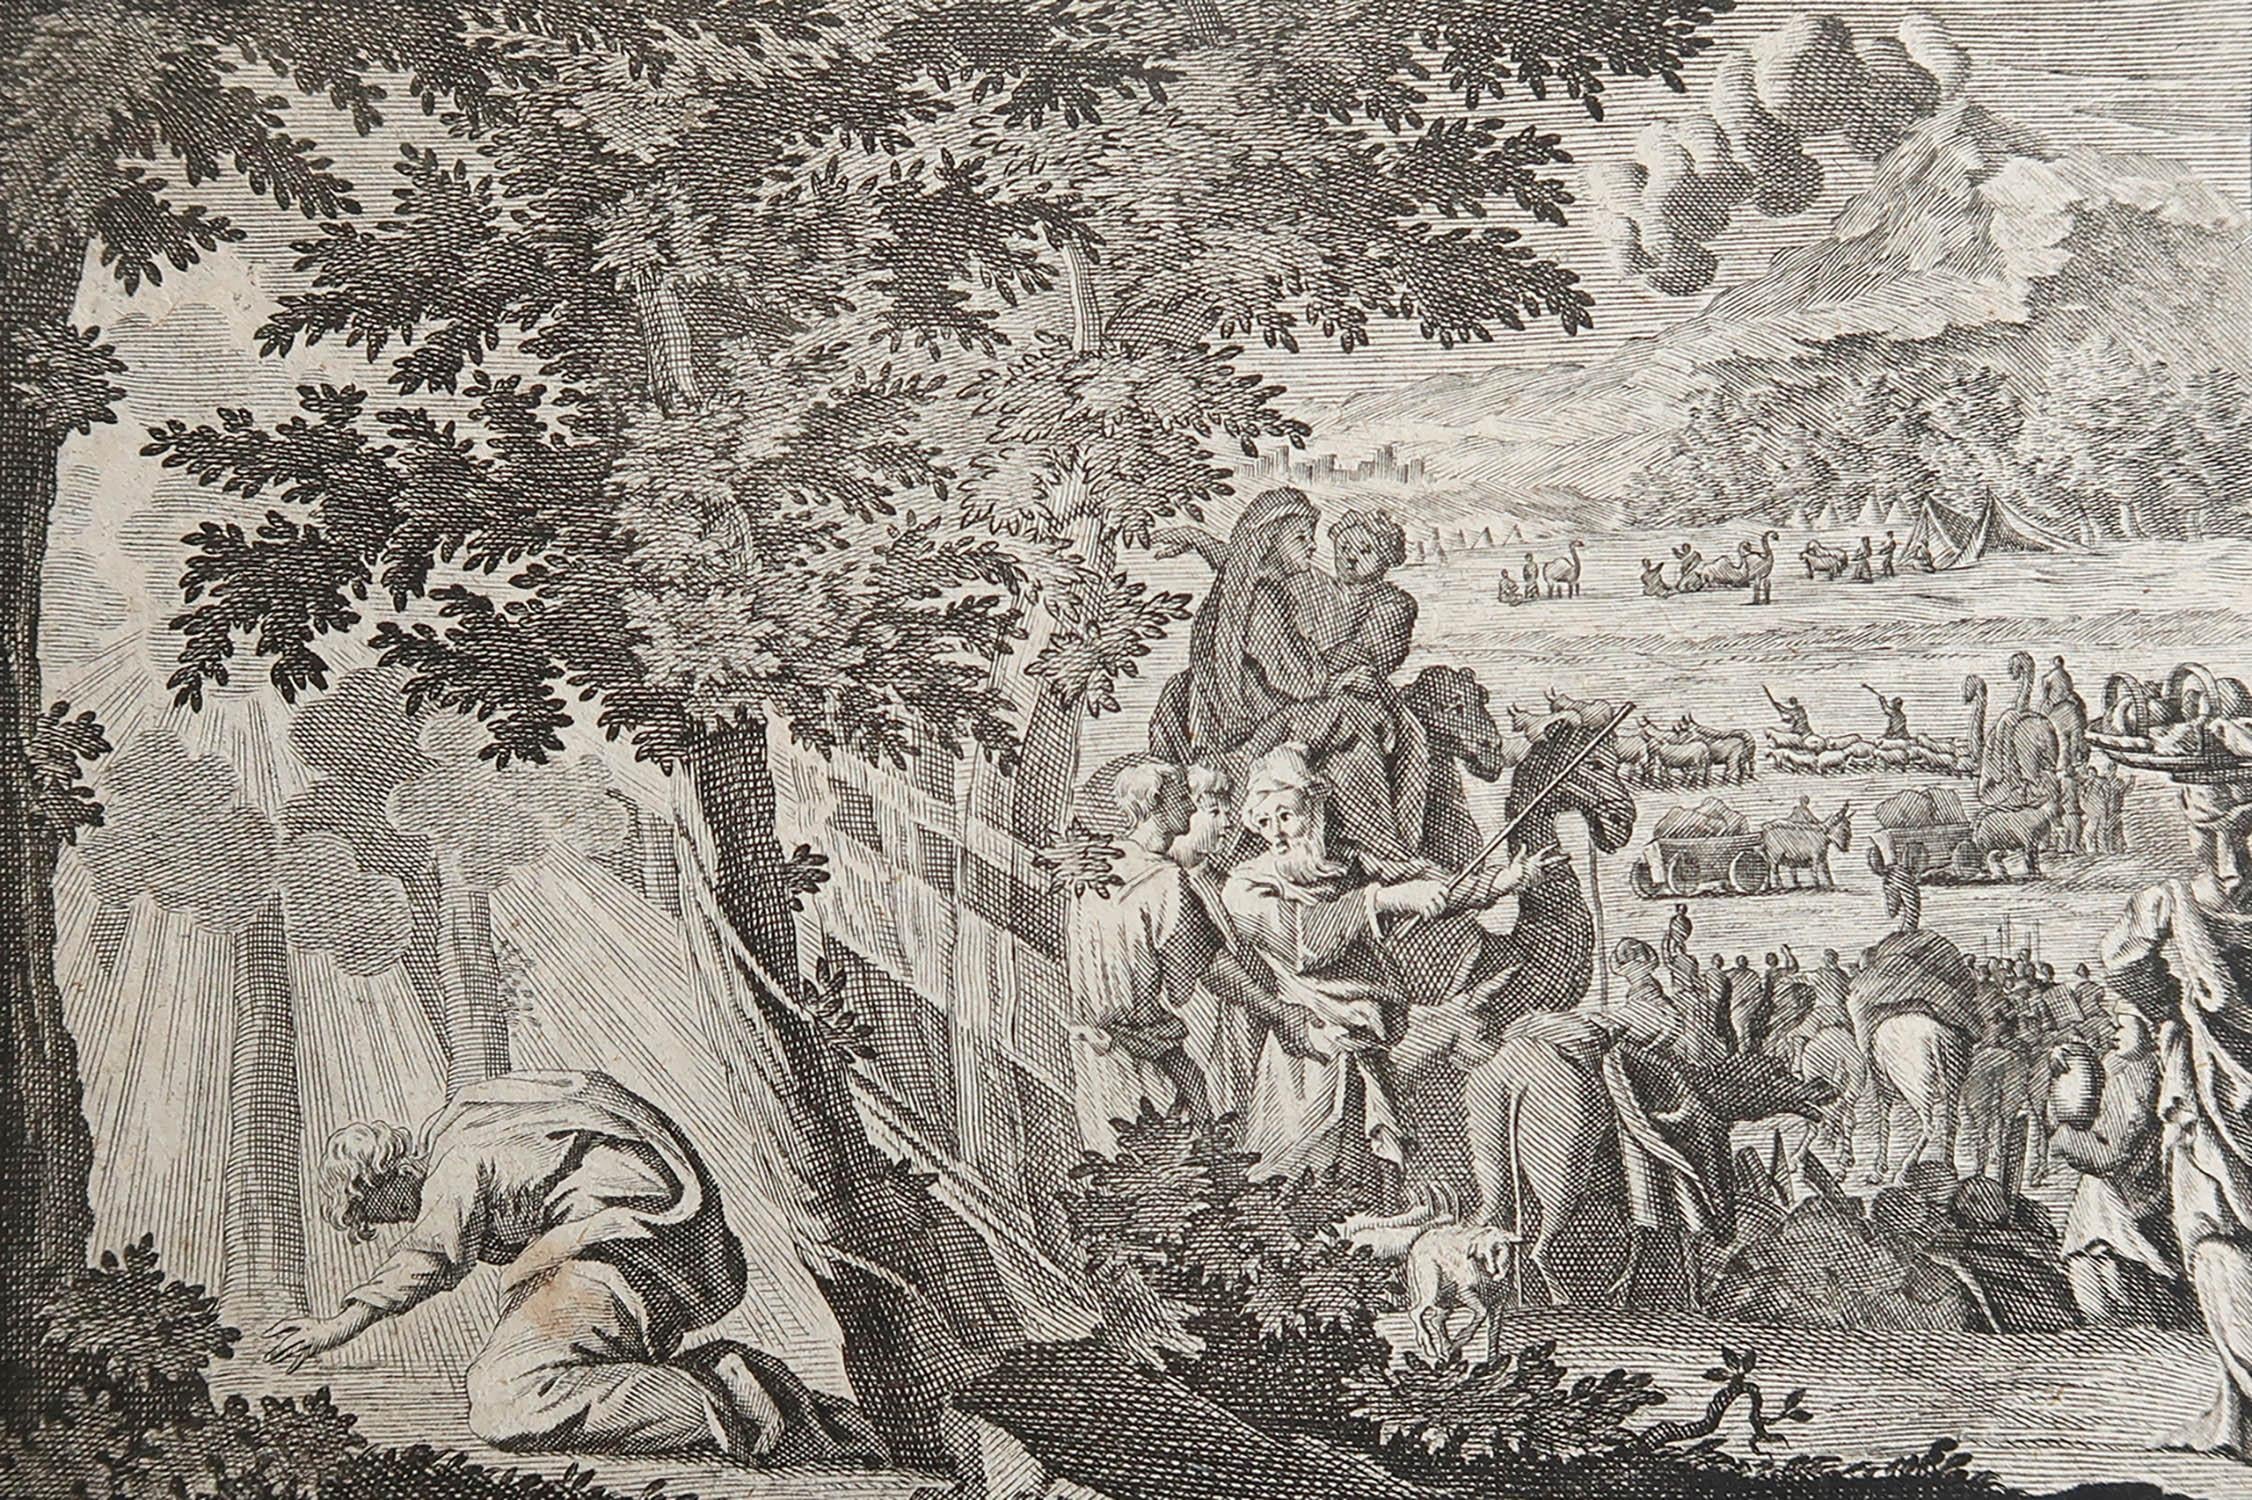 Magnifique gravure sur cuivre d'après Jan Luyken

Publié par Marten Schagen, Amsterdam. 1724

Texte au verso

La mesure indiquée correspond au format du papier.




